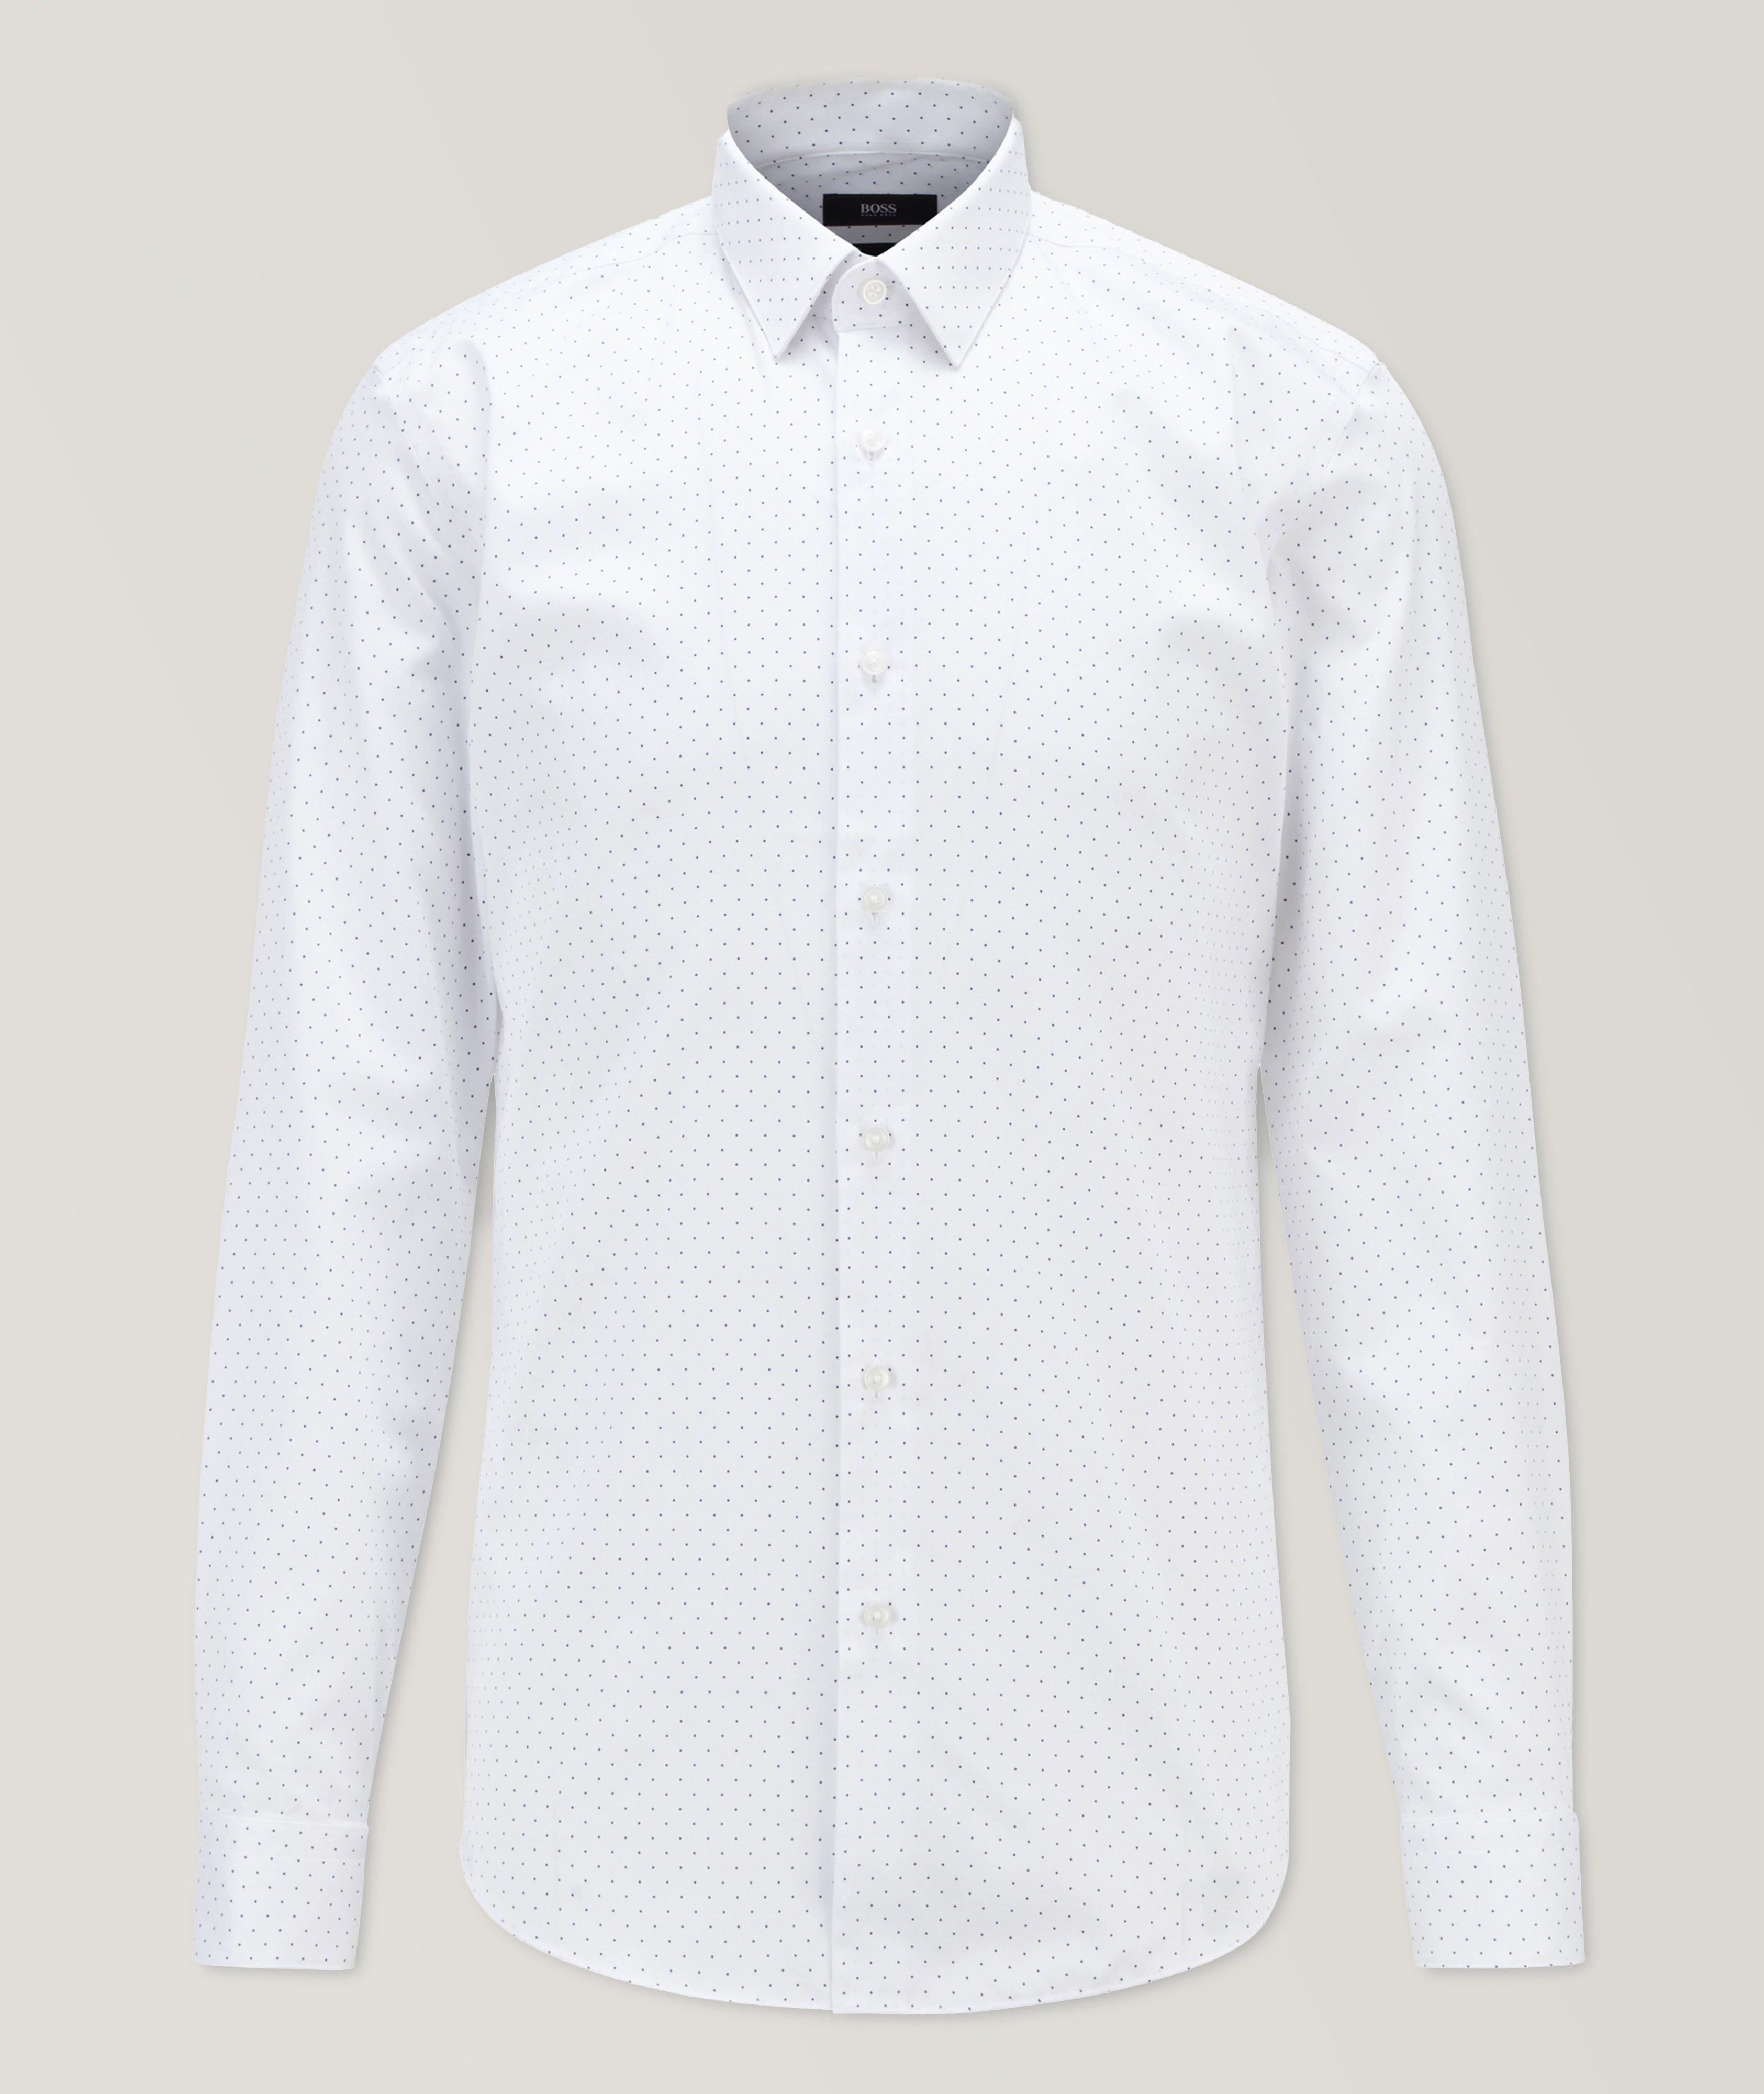 Chemise habillée en coton à motif pointillé de coupe amincie image 0